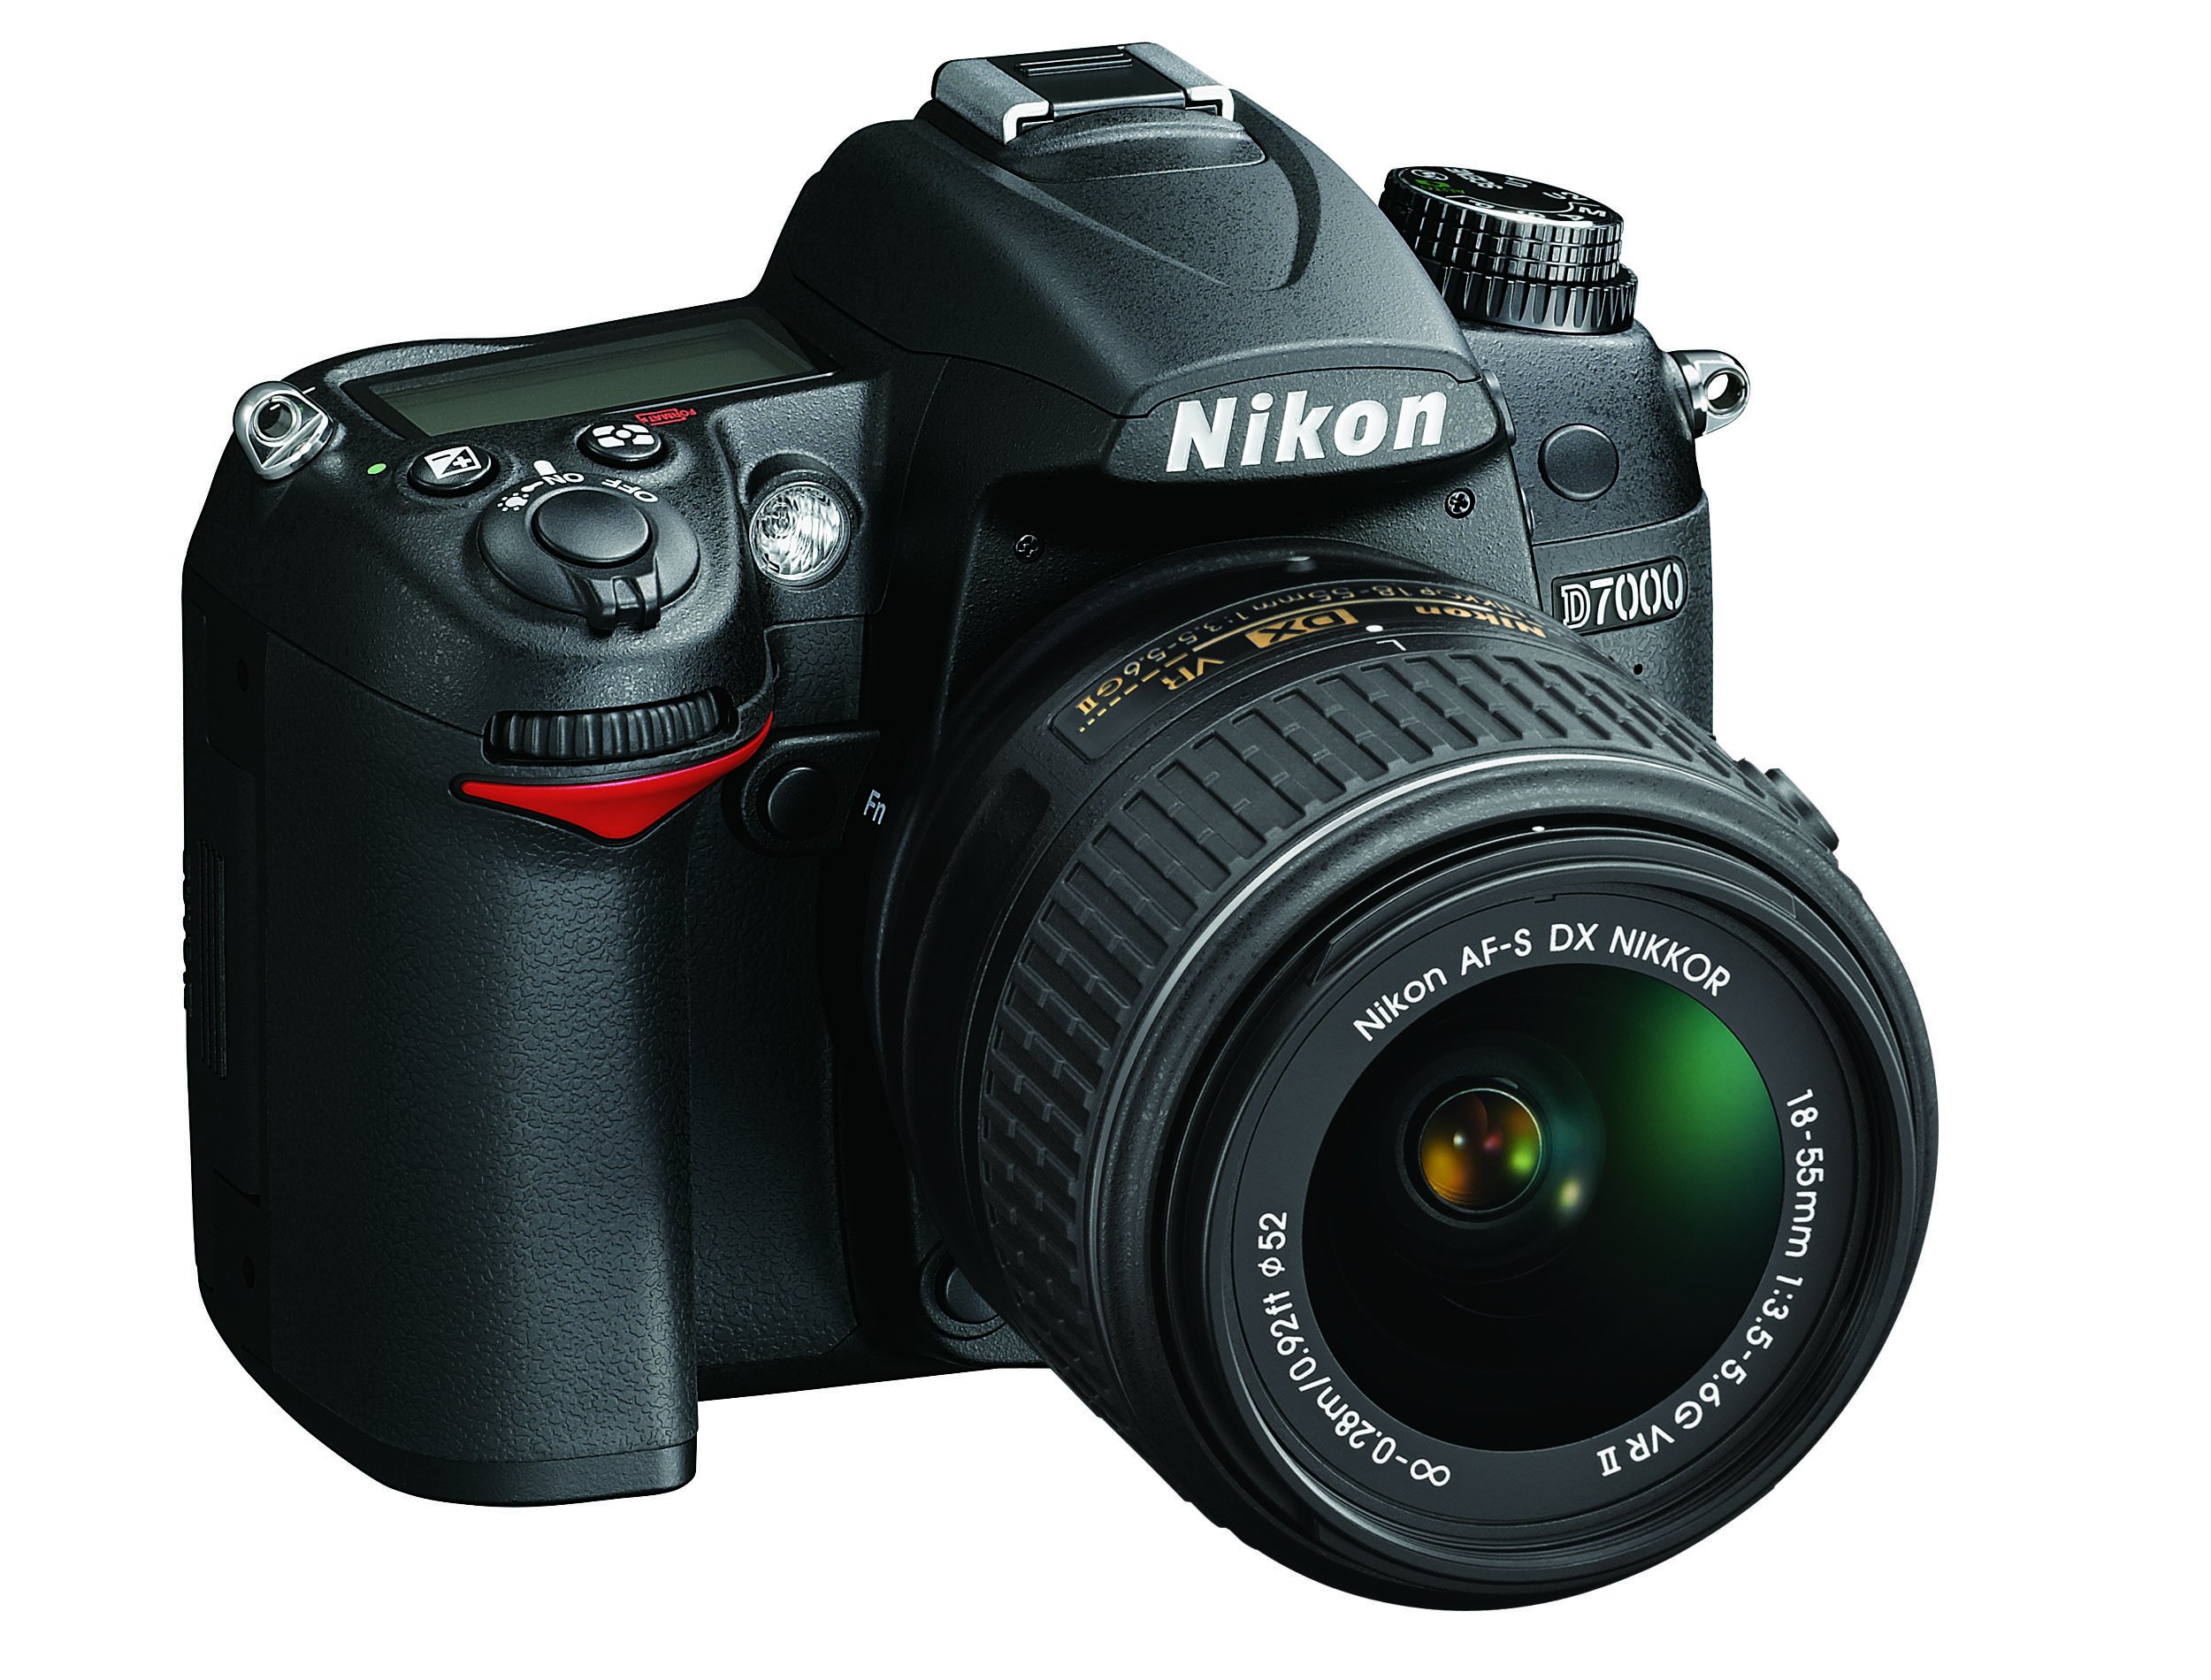 Nikon D7000 16.2 Megapixel Digital SLR Camera with 18-55mm Lens (Black)